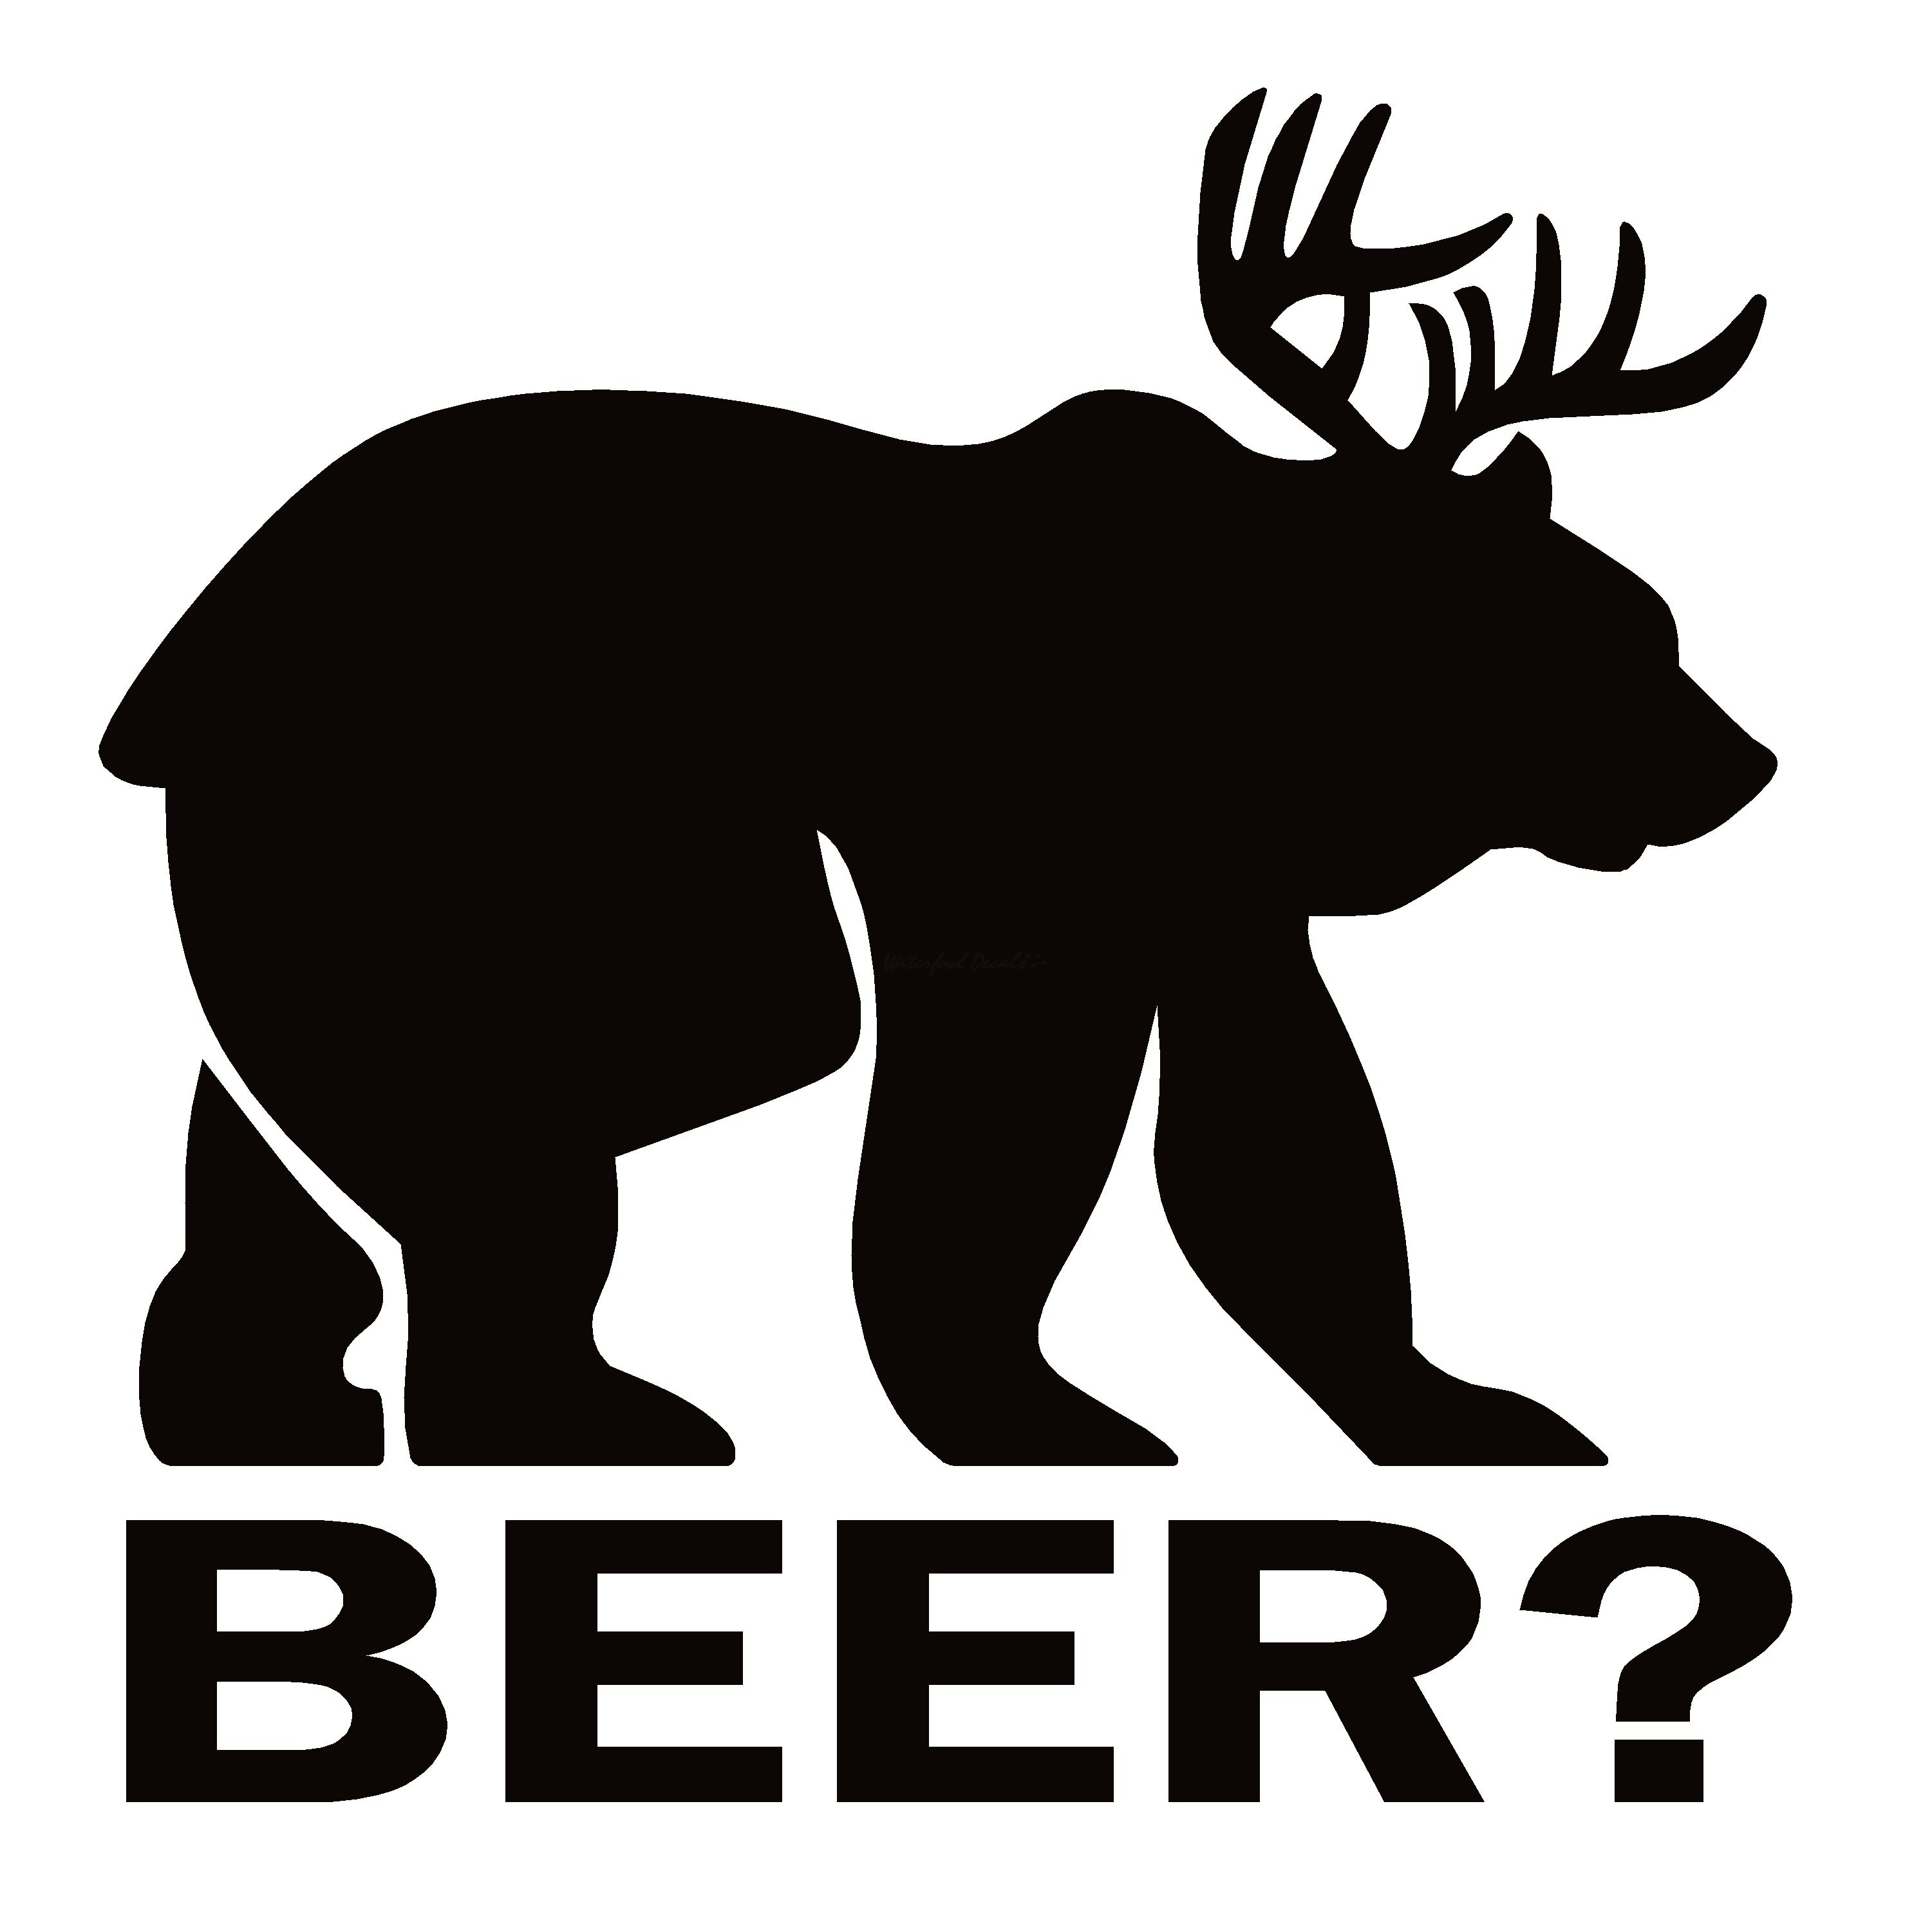 Deer Bear Beer Decal Bear Deer Beer Sticker 7240